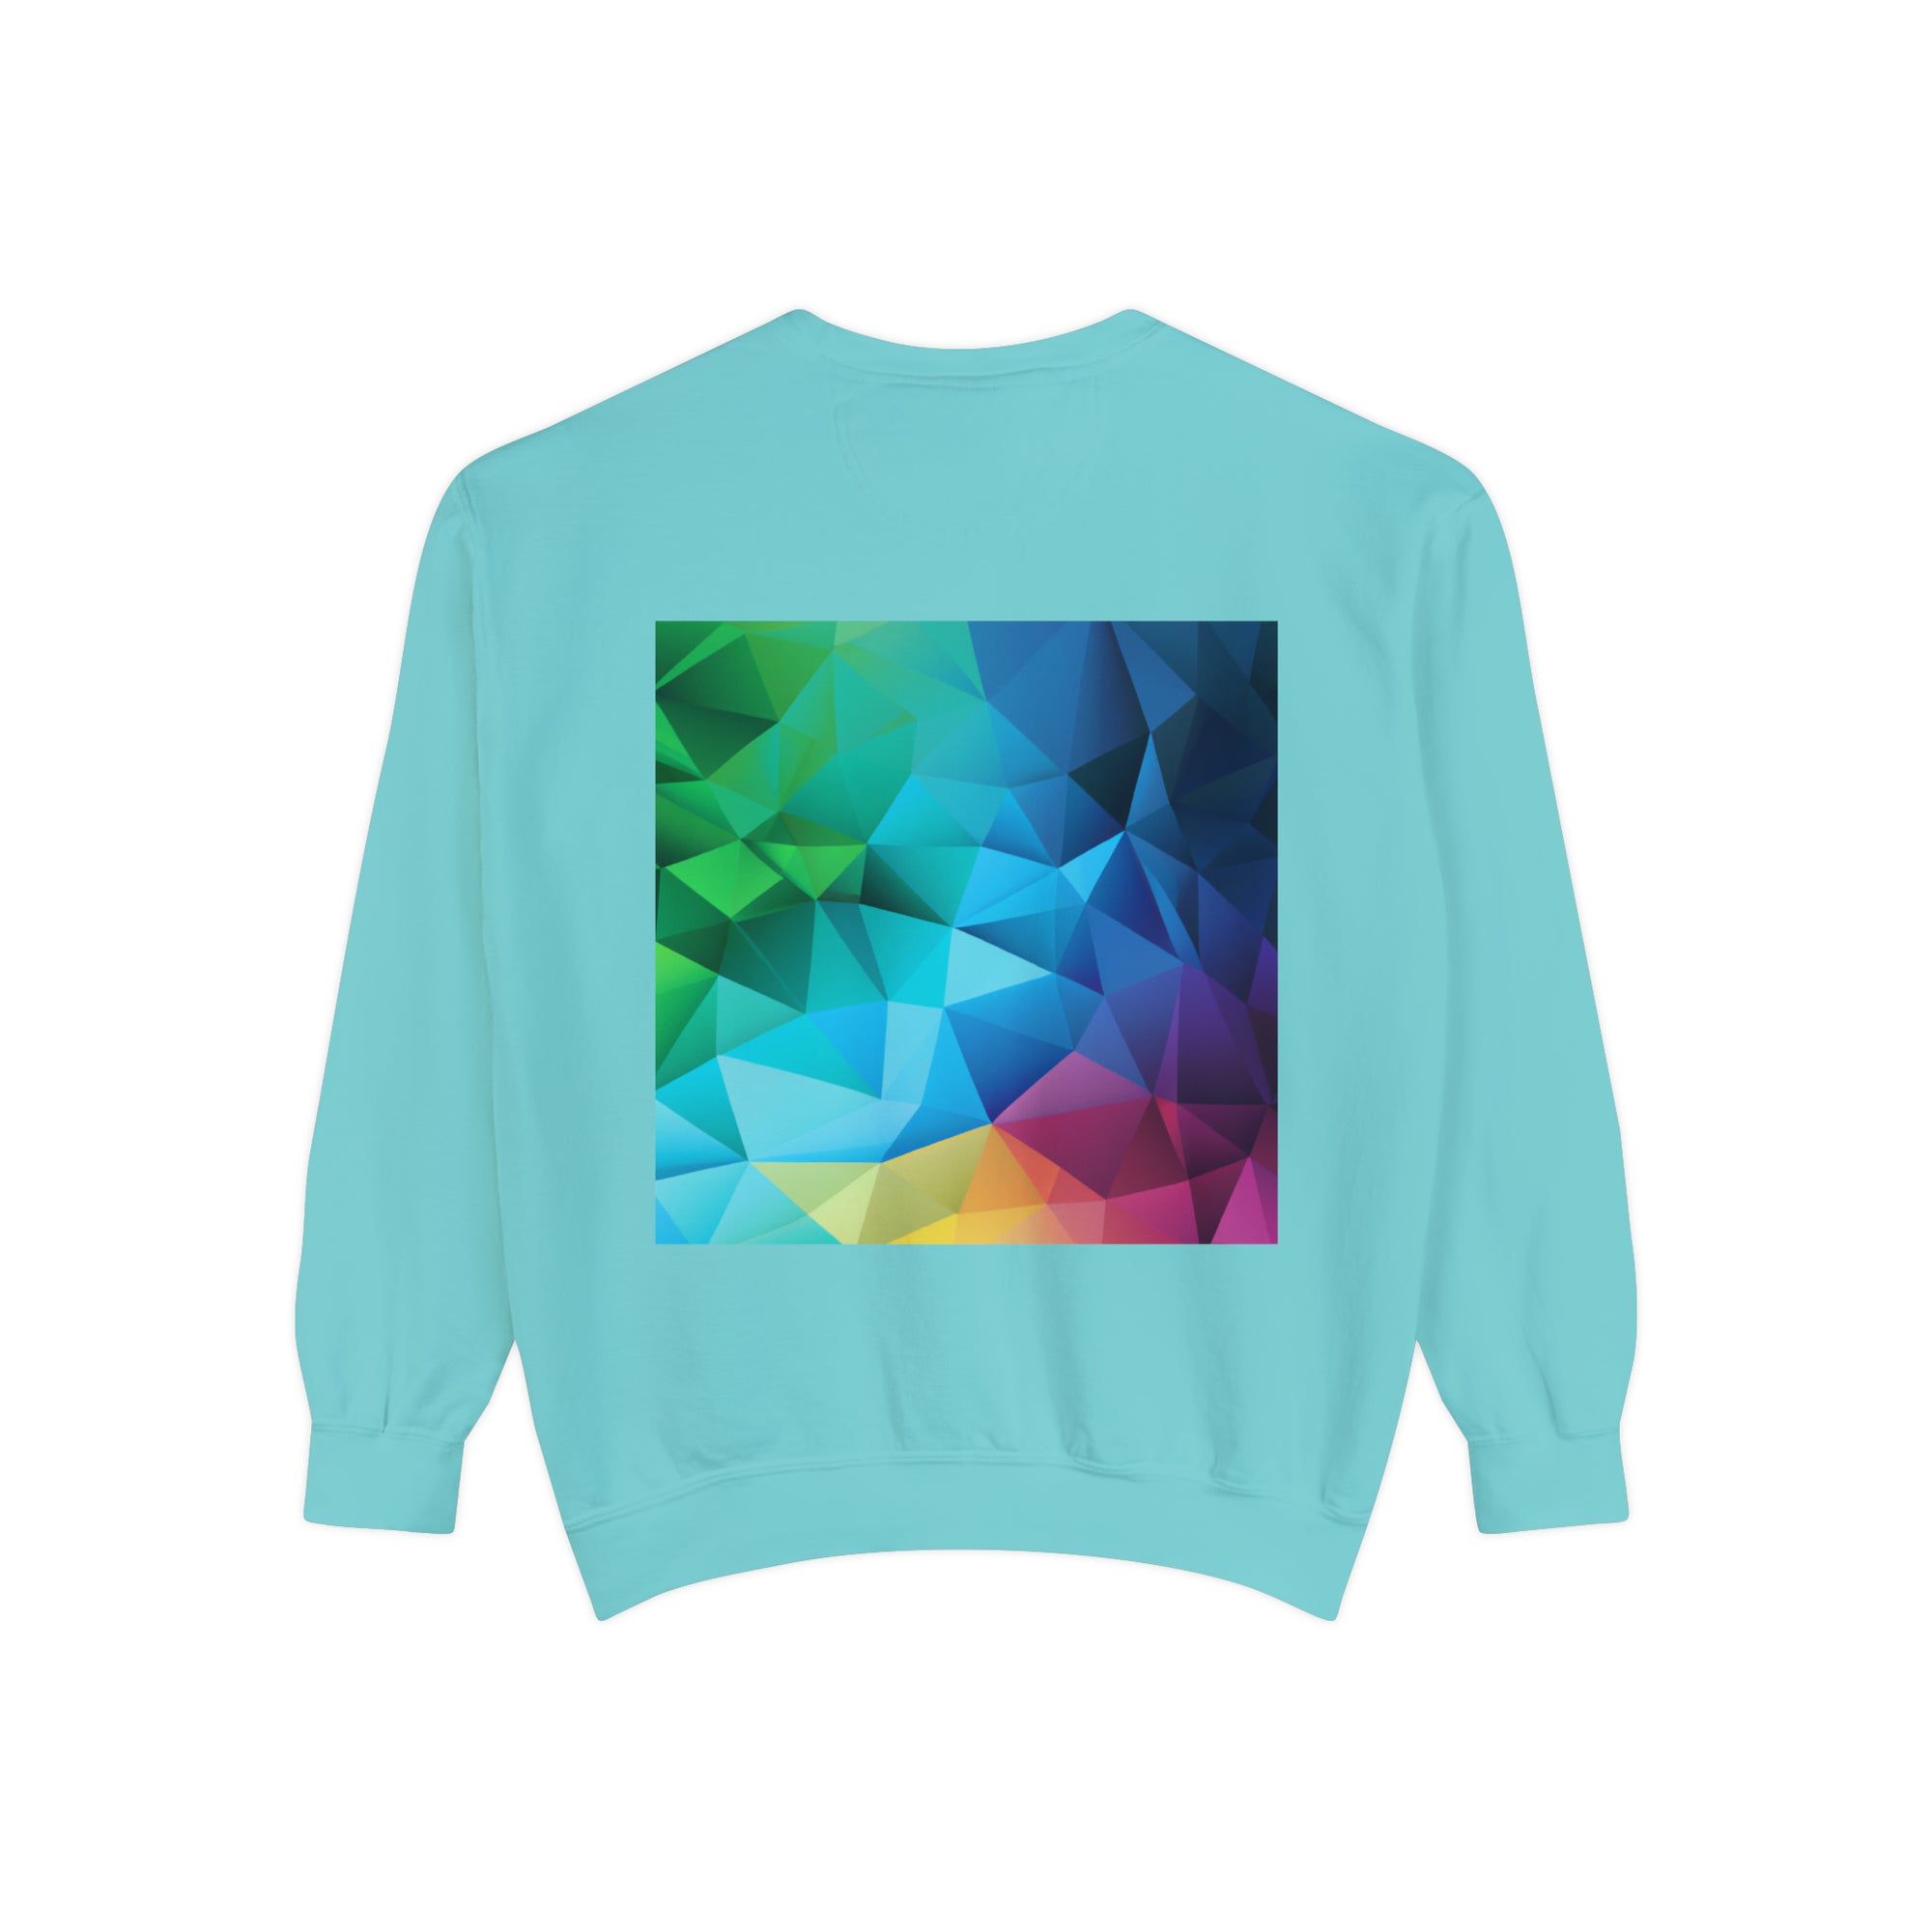 Inspire Change - Sweatshirt Garment-Dyed